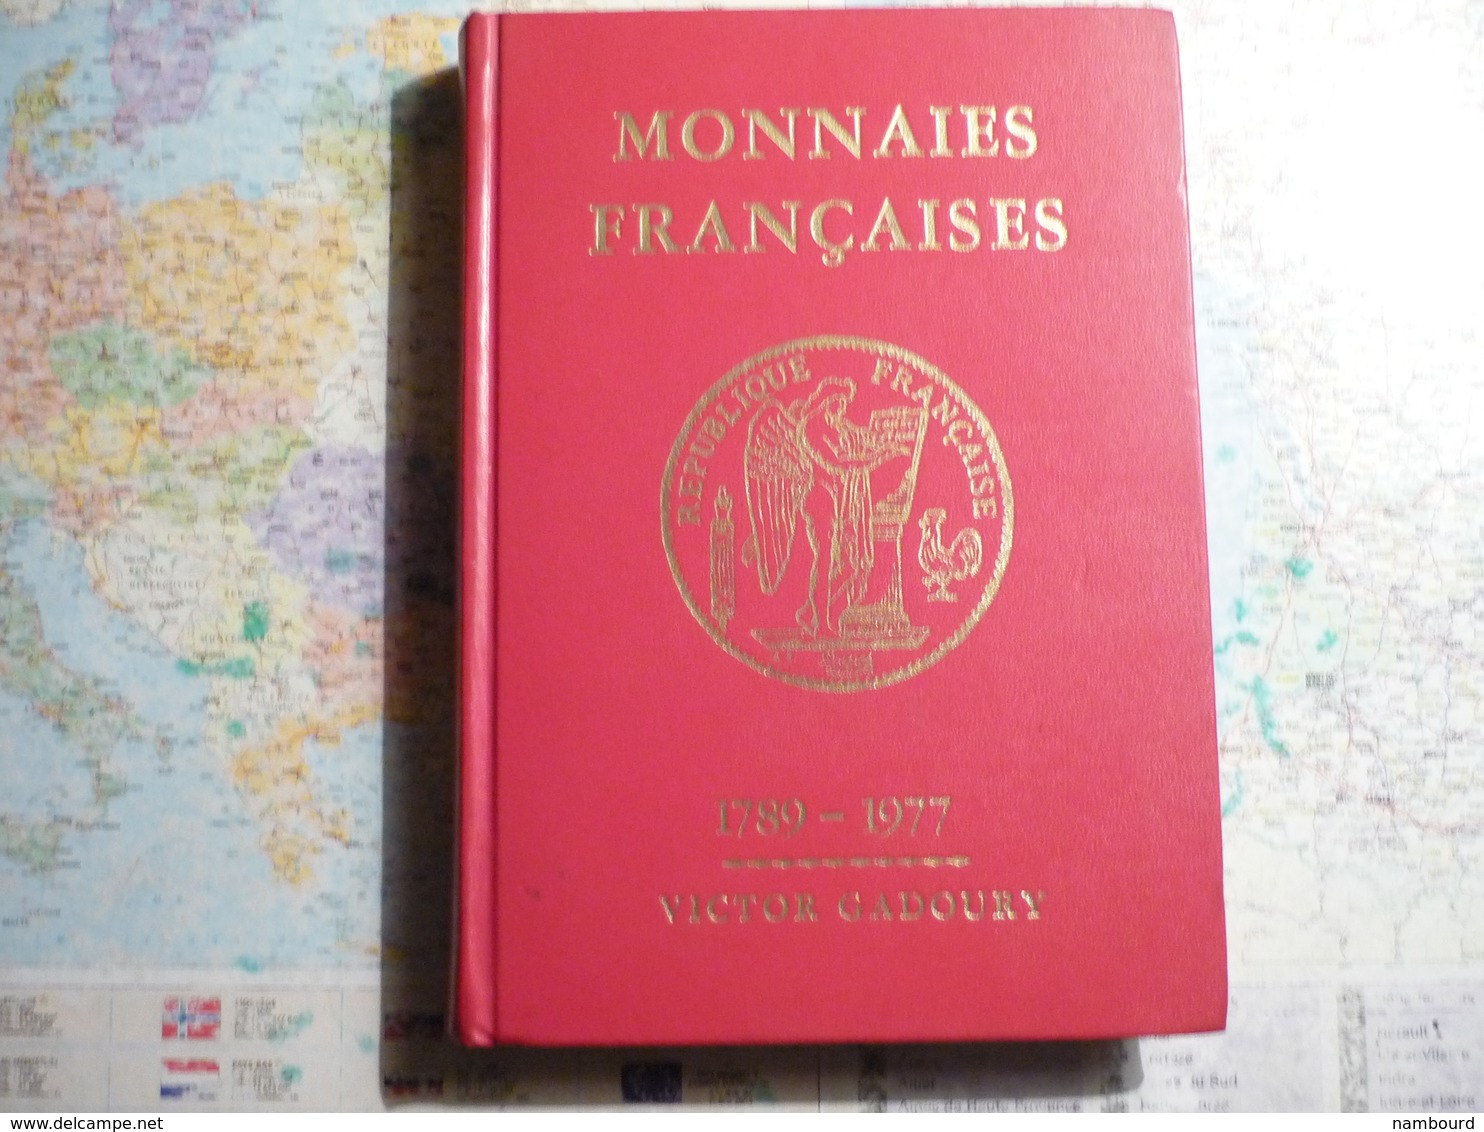 Catalogue Monnaies Françaises 1789-1977 Victor Gadoury 3-e édition - Matériel